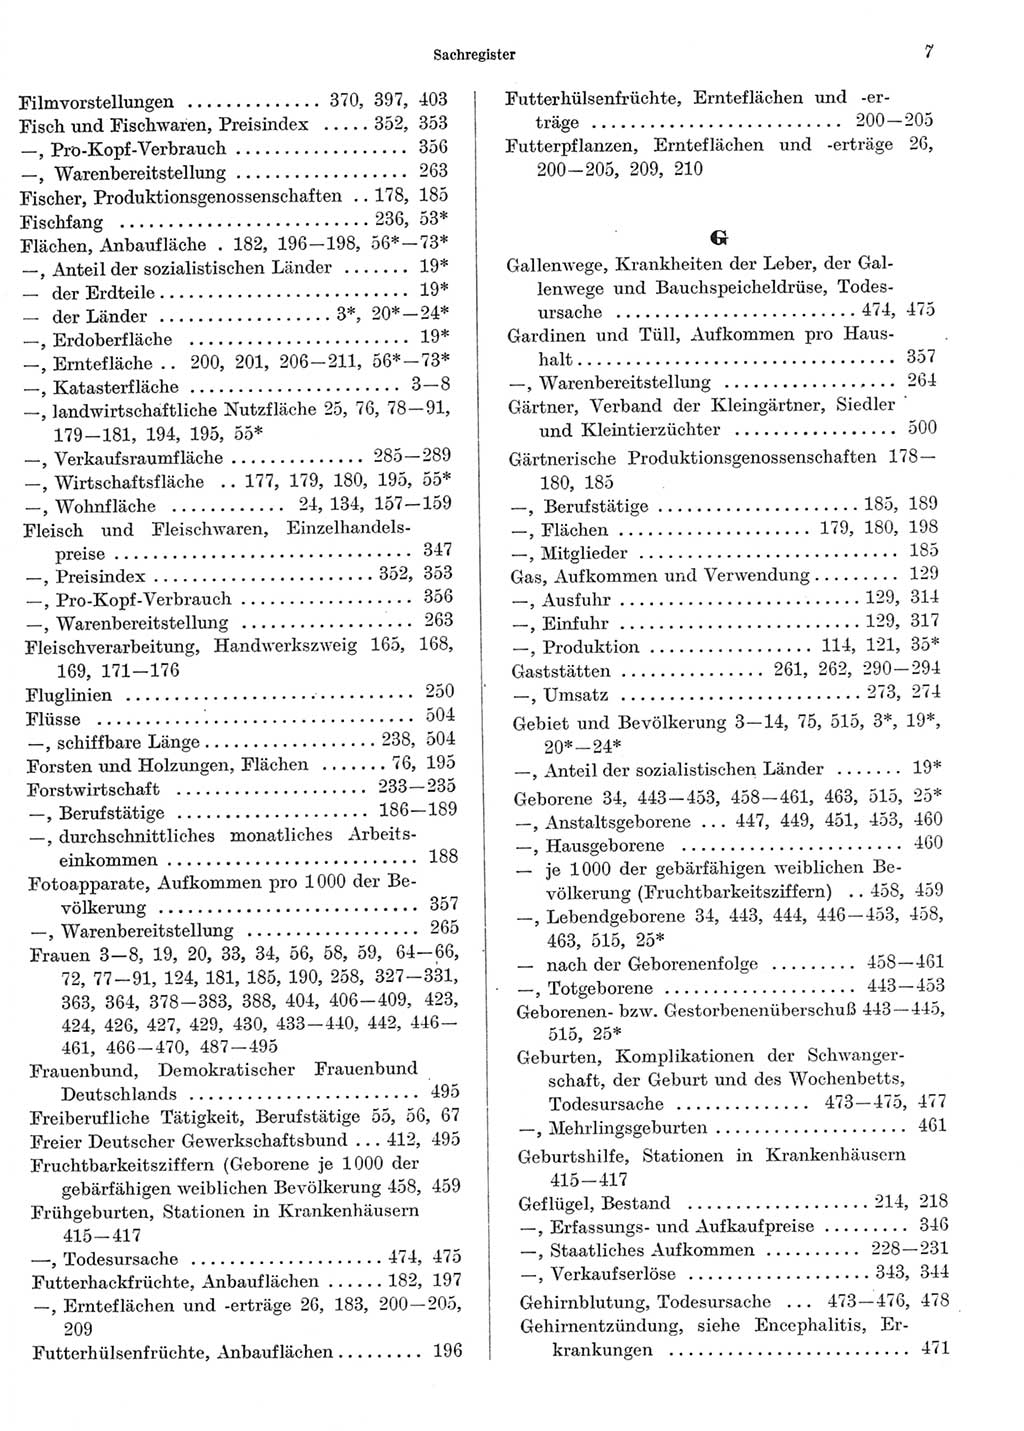 Statistisches Jahrbuch der Deutschen Demokratischen Republik (DDR) 1969, Seite 7 (Stat. Jb. DDR 1969, S. 7)